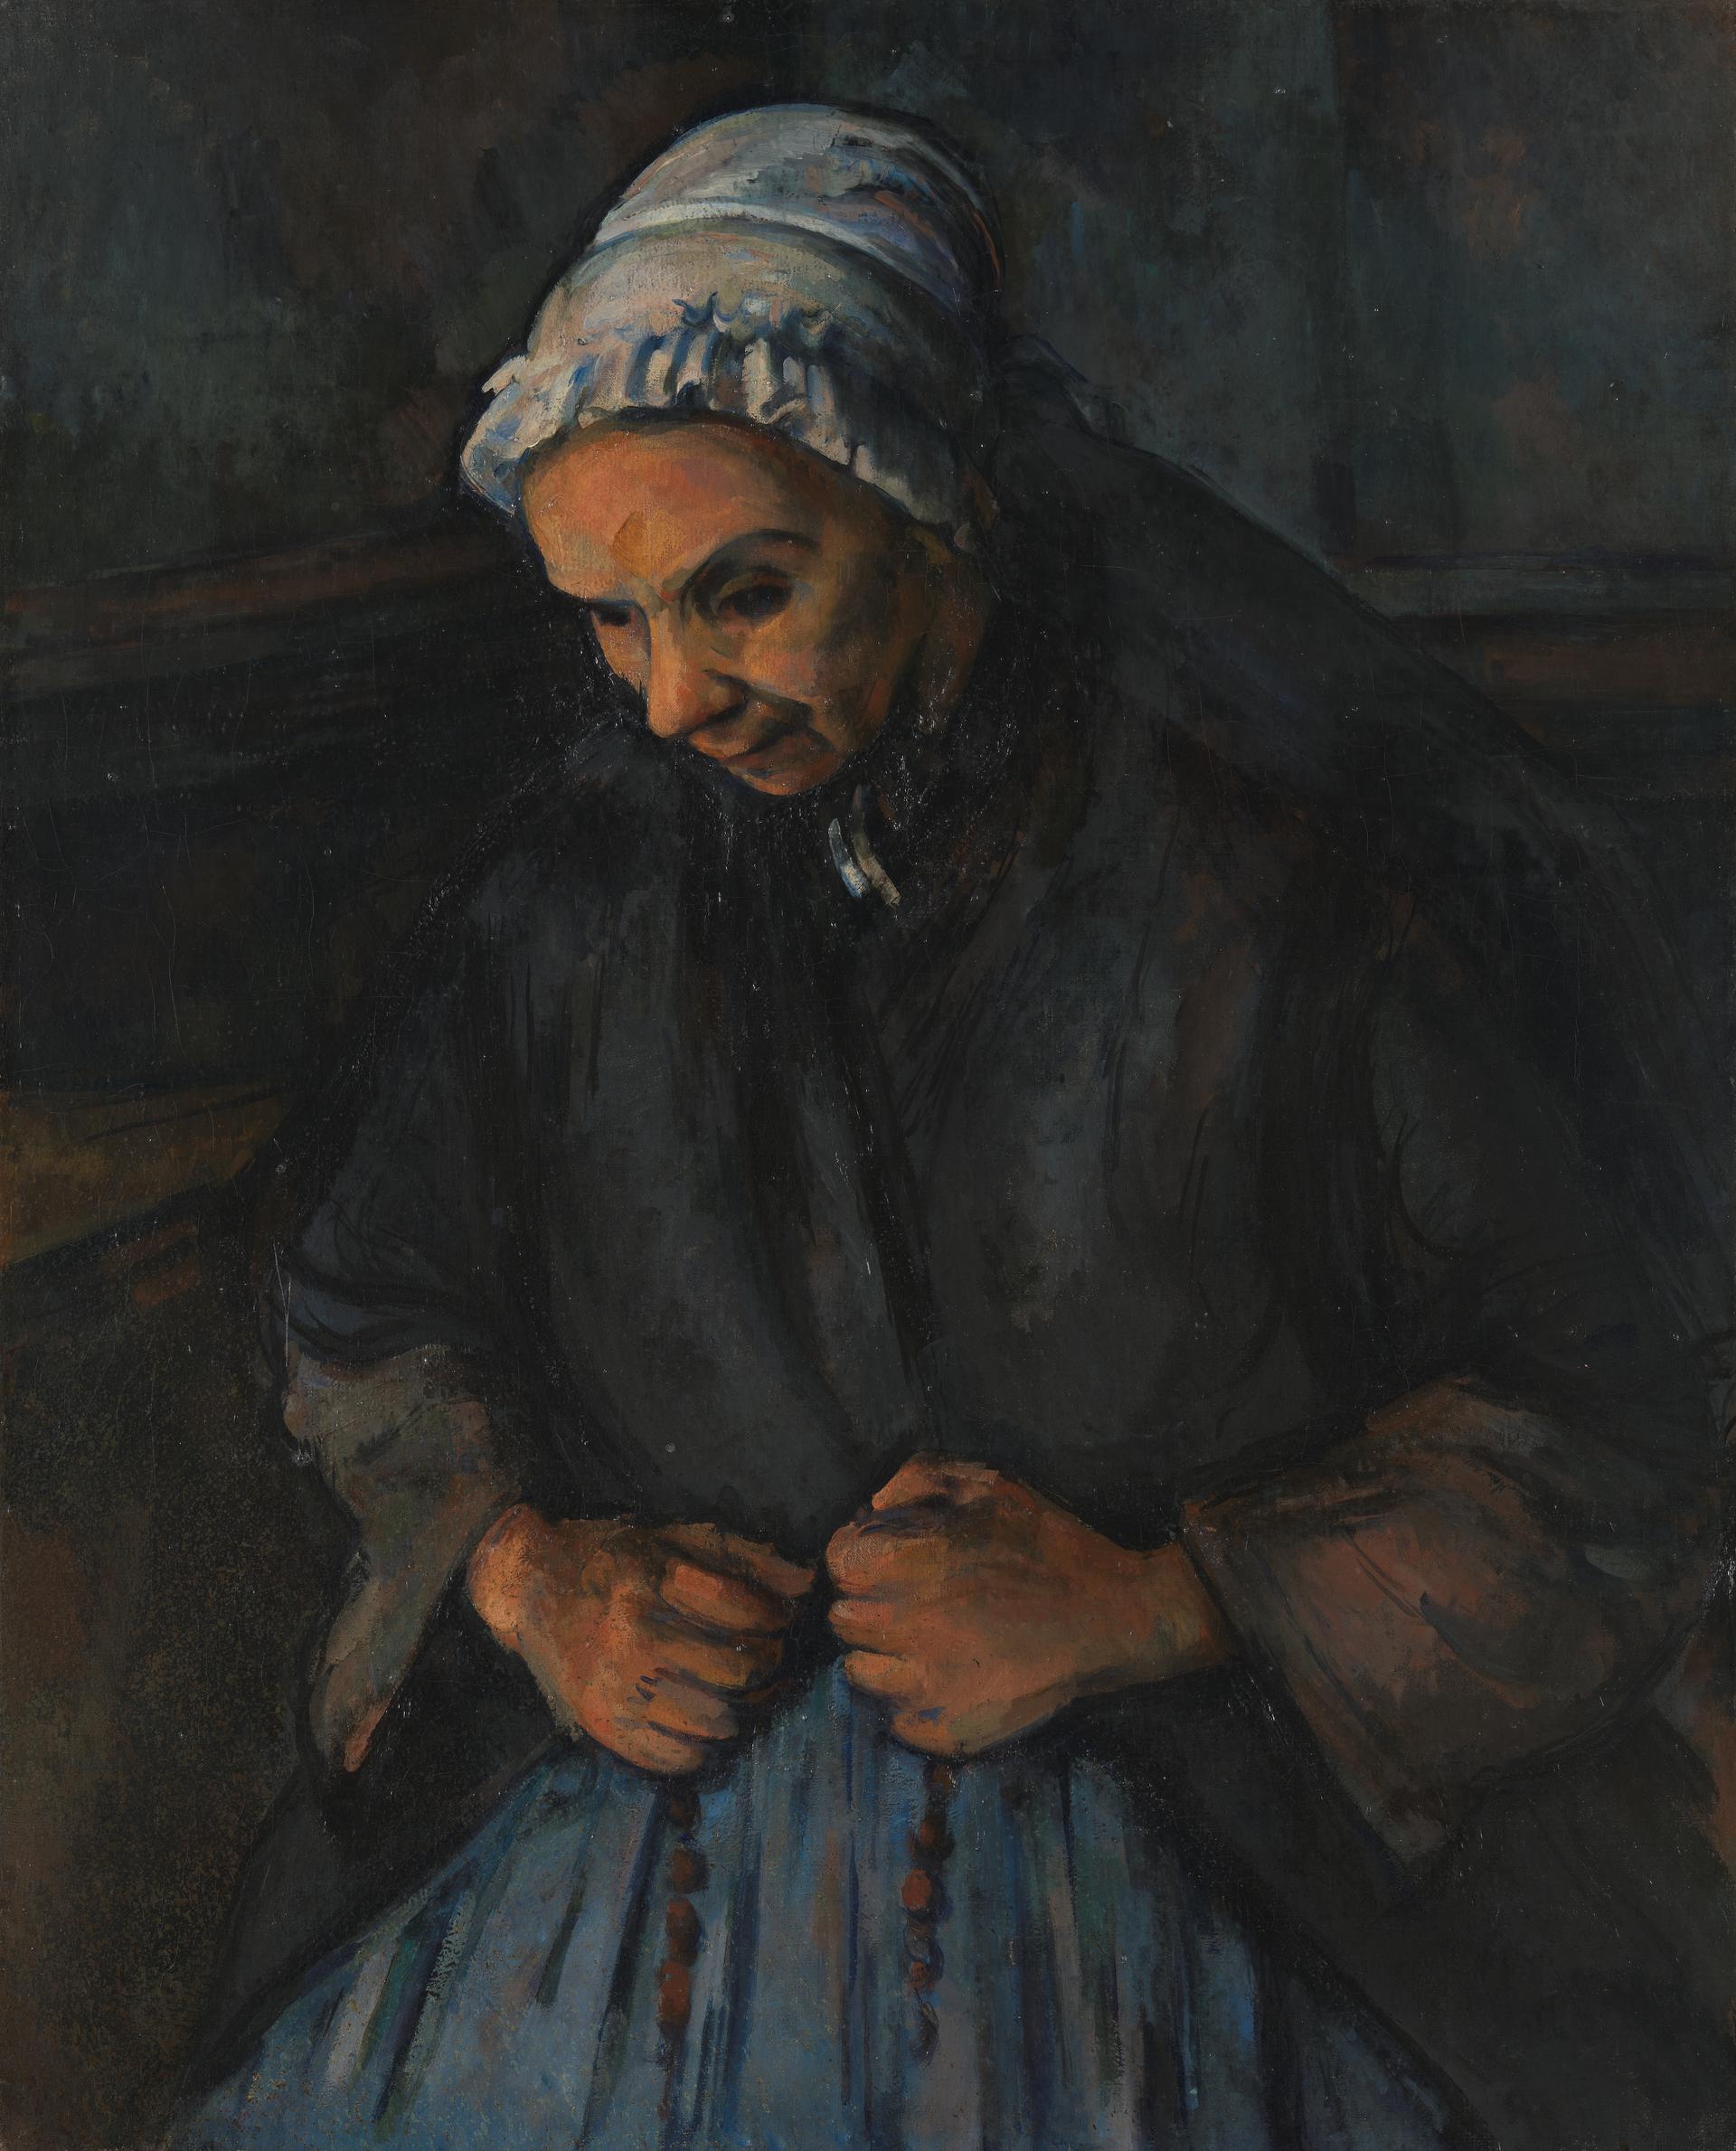 Paul Cezanne (1839 - 1906) | National Gallery, London